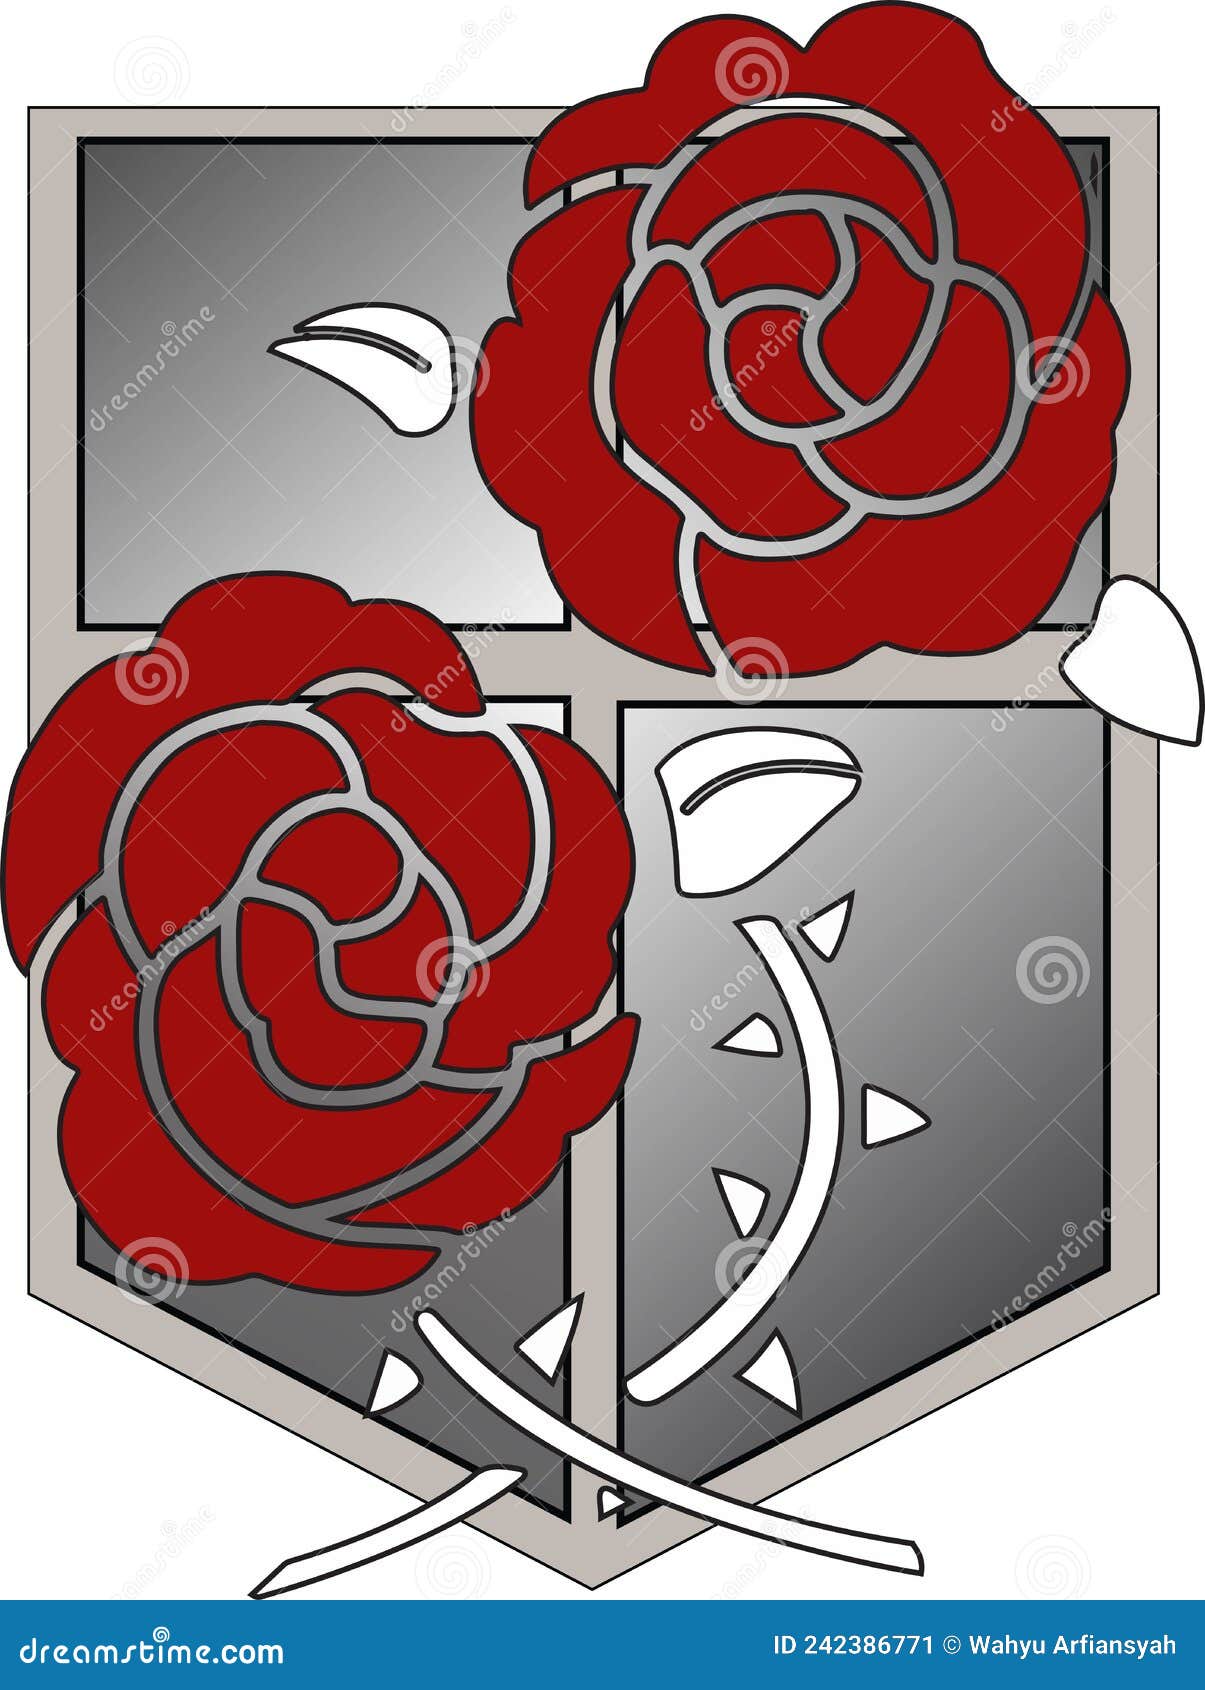 skjorte dump jeg er træt Shield Logo with Red Rose Flower with Stem. Stock Illustration -  Illustration of attack, titan: 242386771